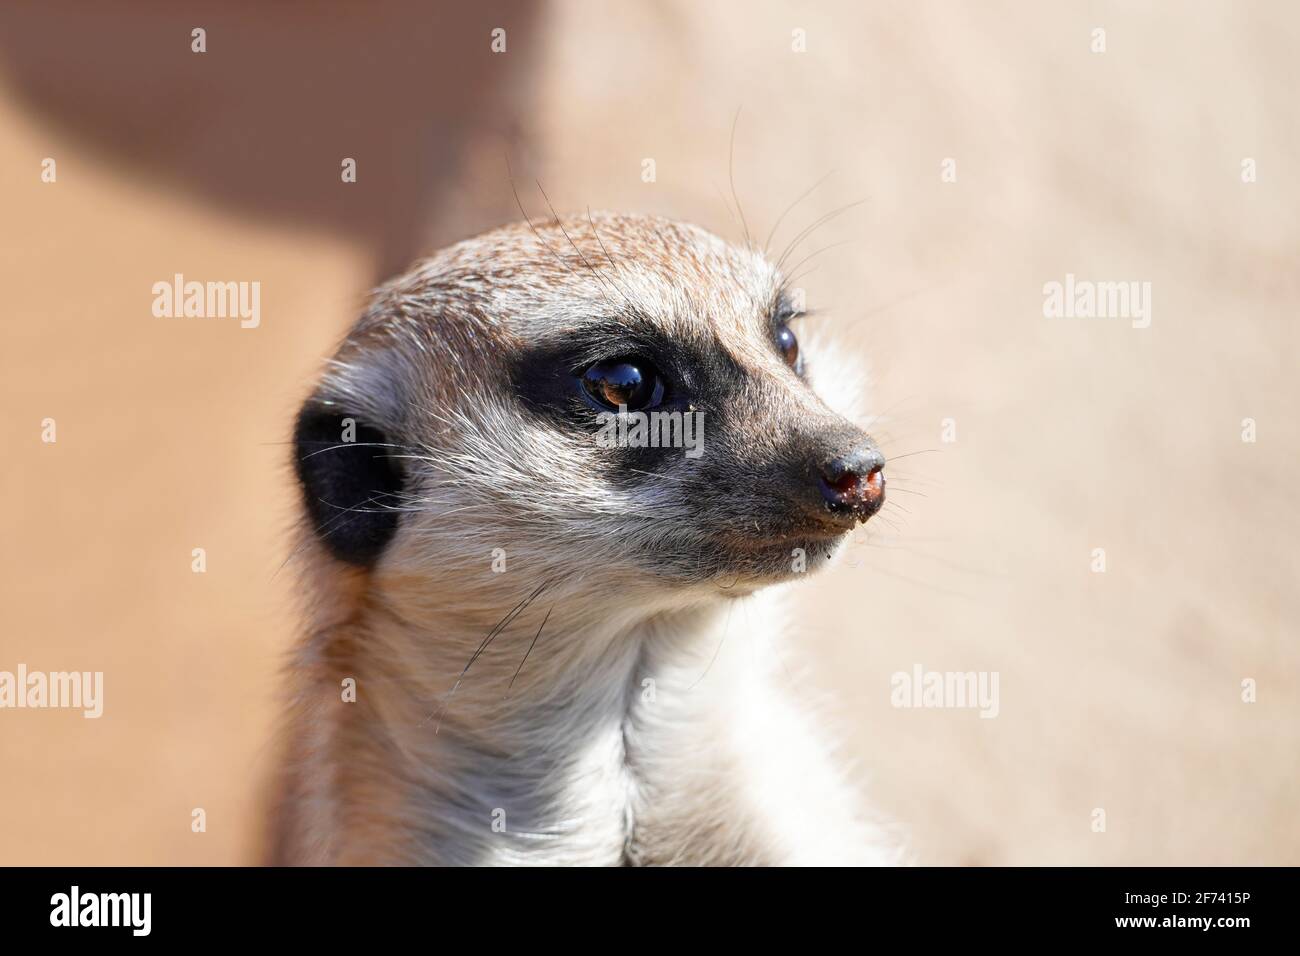 Ritratto di un meerkat. Suricata suricatta. L'animale si guarda intorno con attenzione e tiene l'orologio. Mammifero con pelliccia marrone. Famiglia Mongoose. Foto Stock